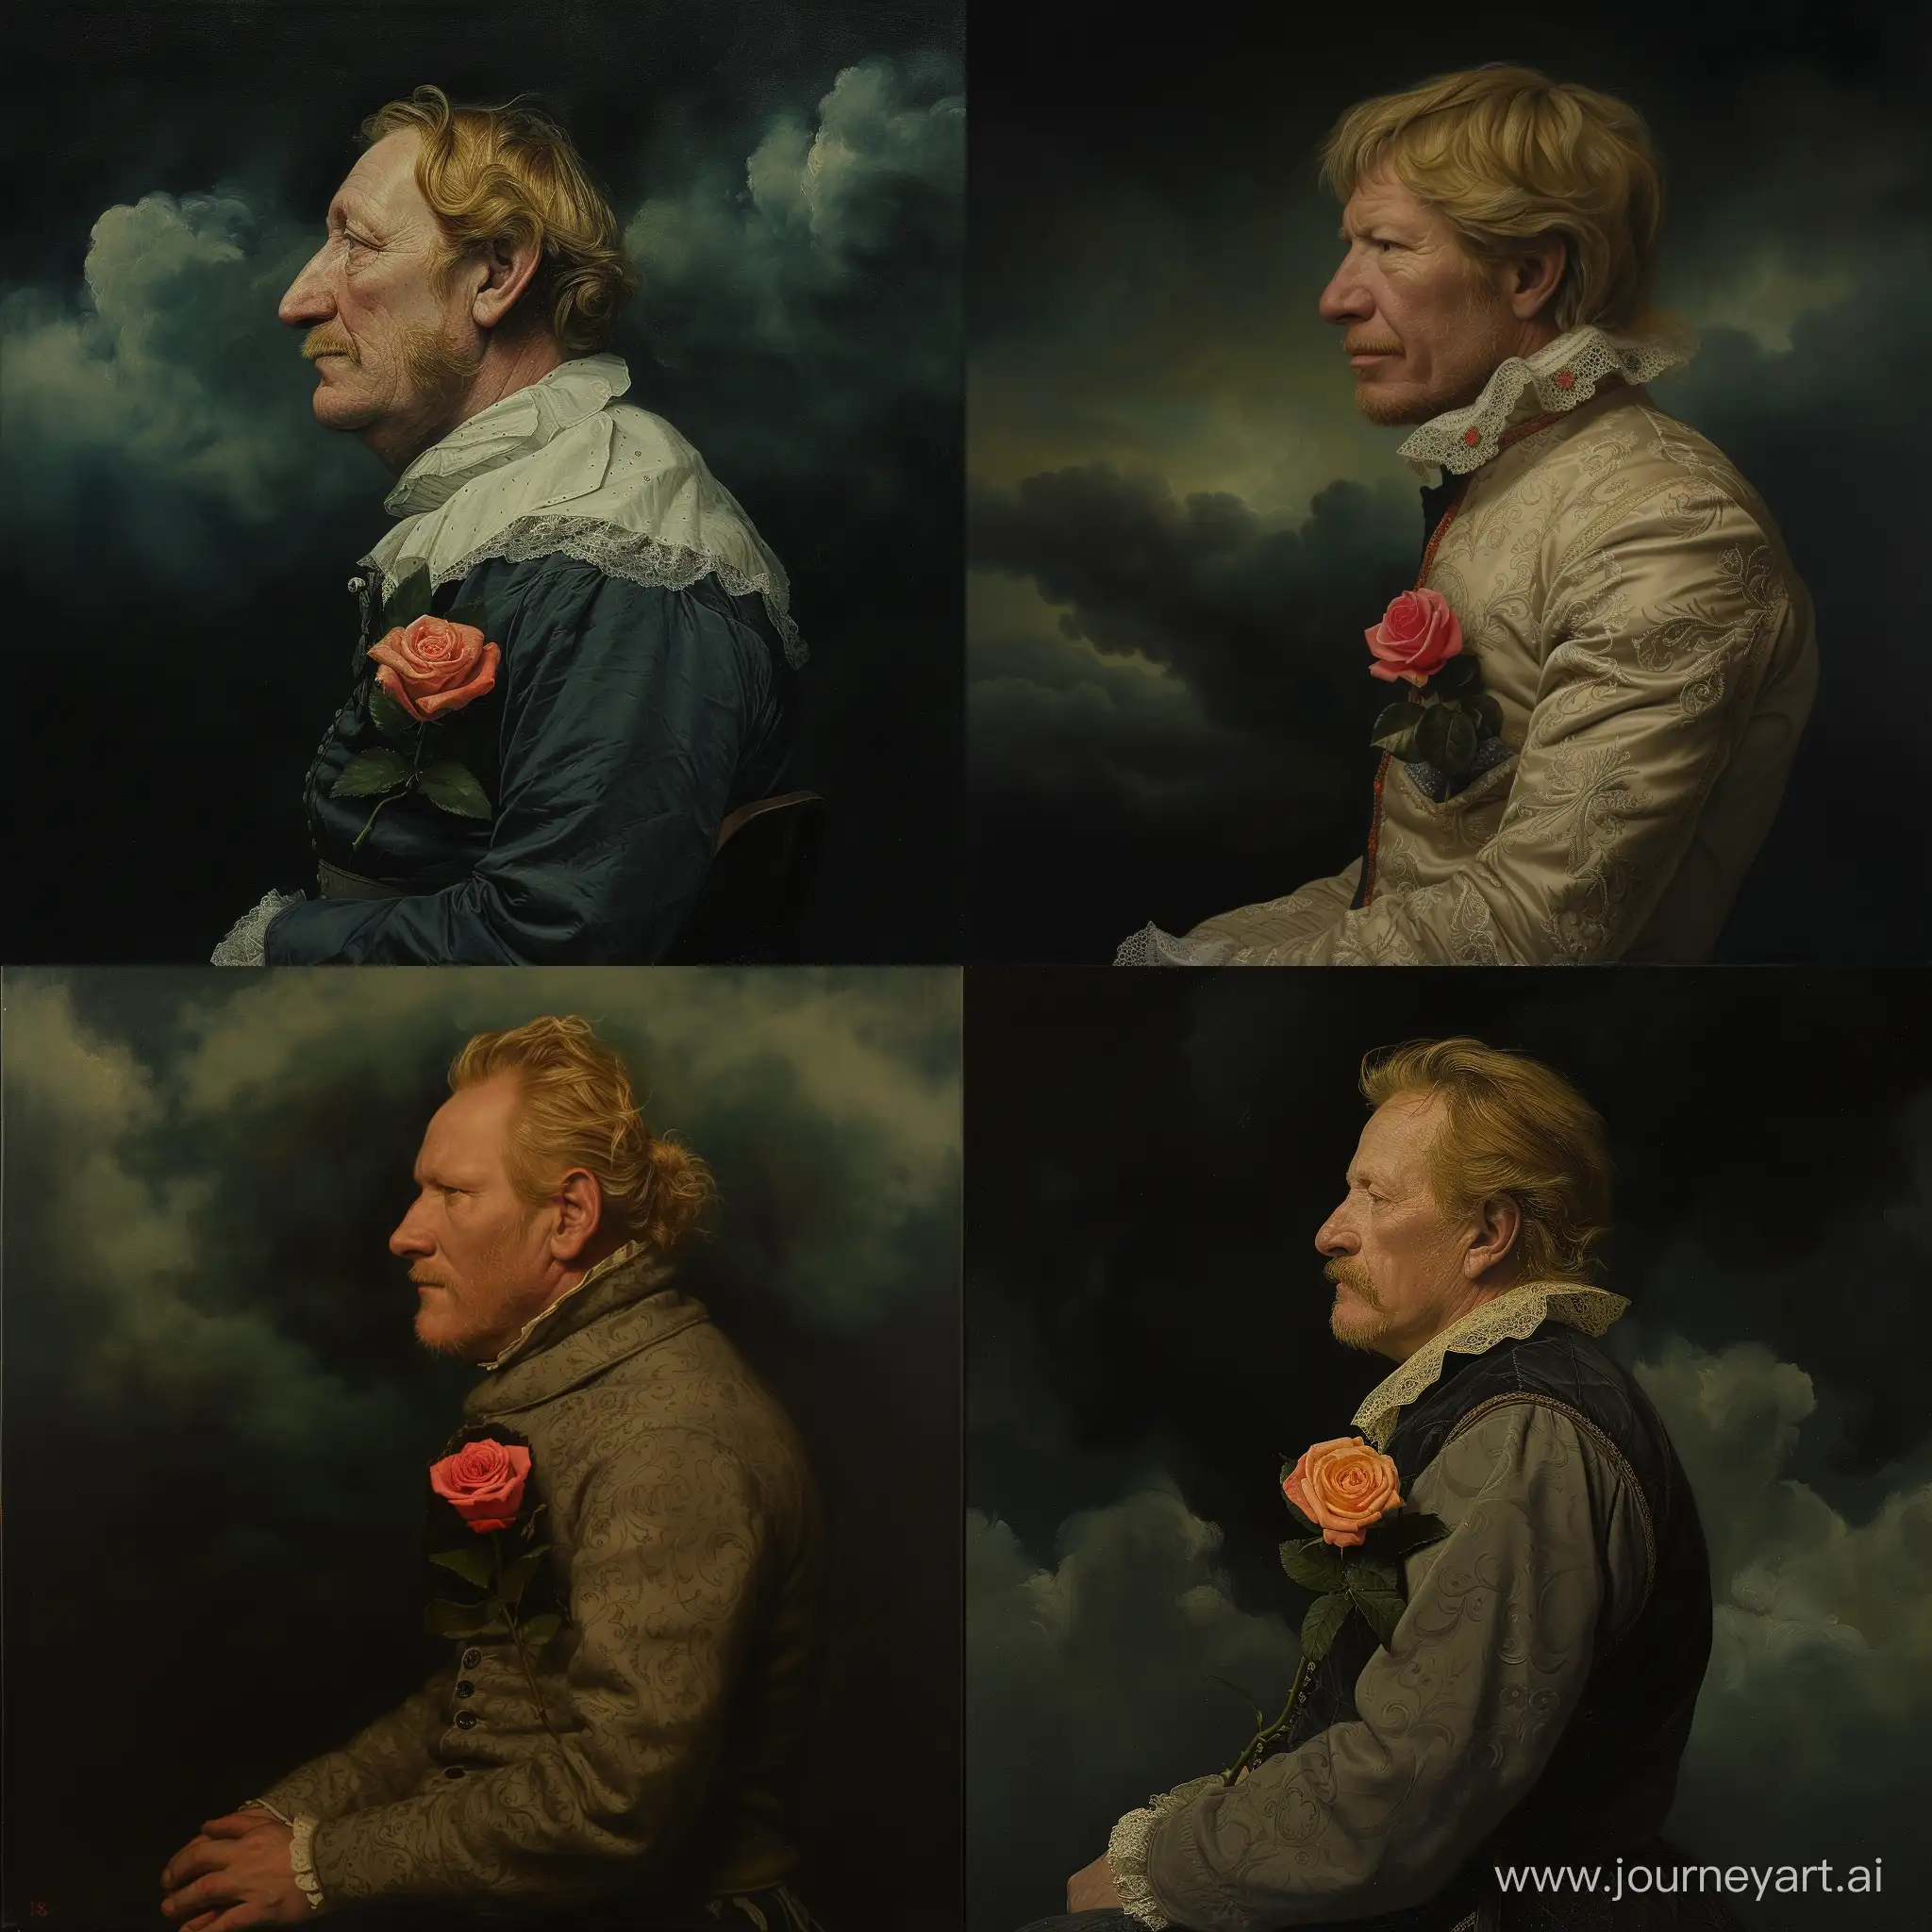 Victorian-Gentleman-with-Rose-in-Atmospheric-Portrait